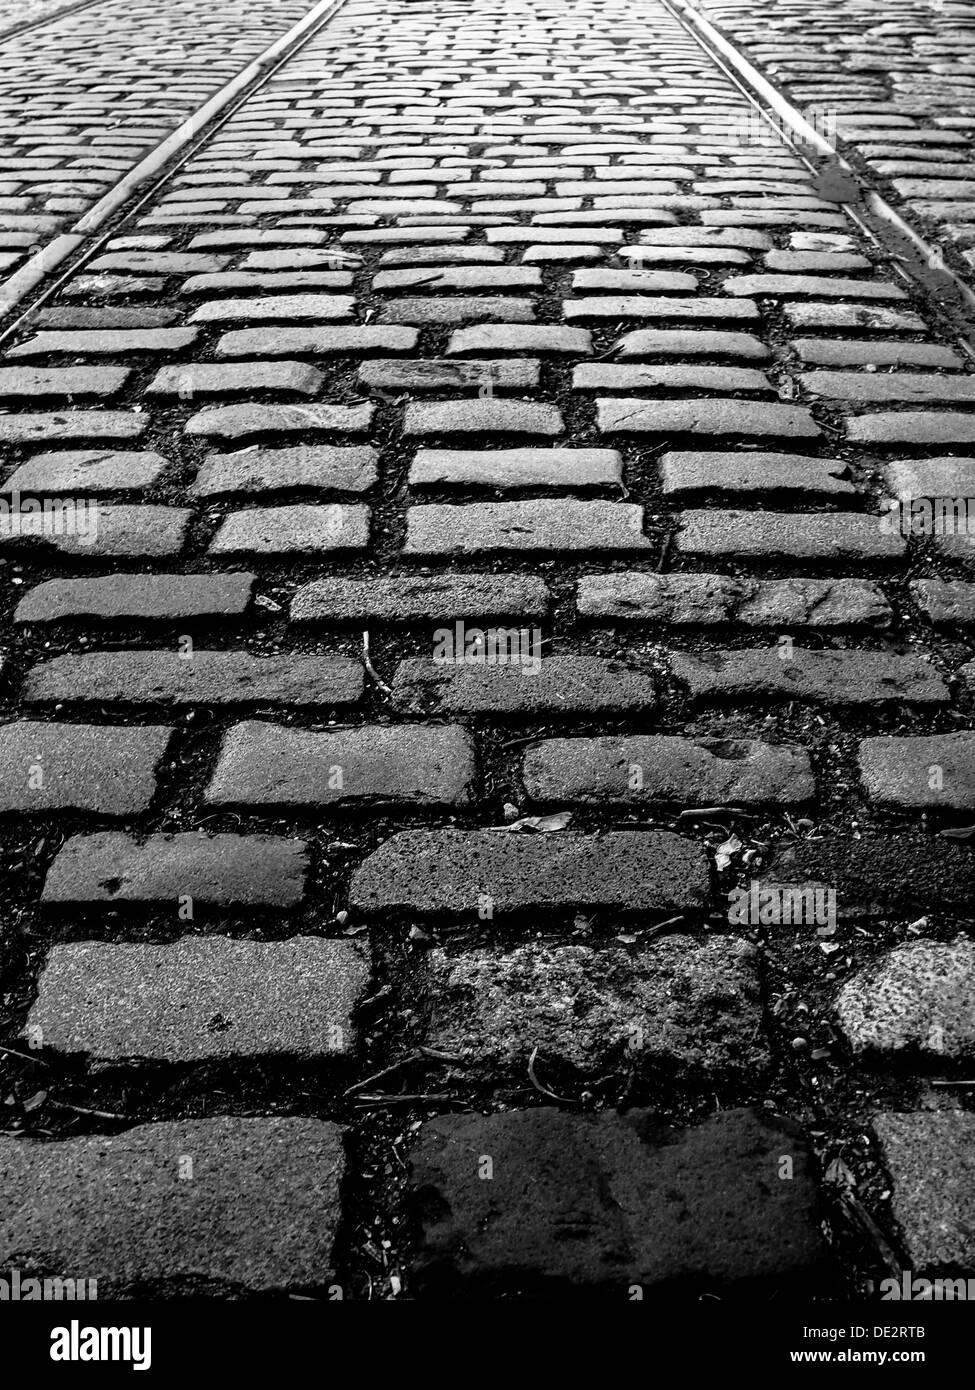 Fotografia in bianco e nero di una strada di ciottoli con i binari del tram. Foto Stock